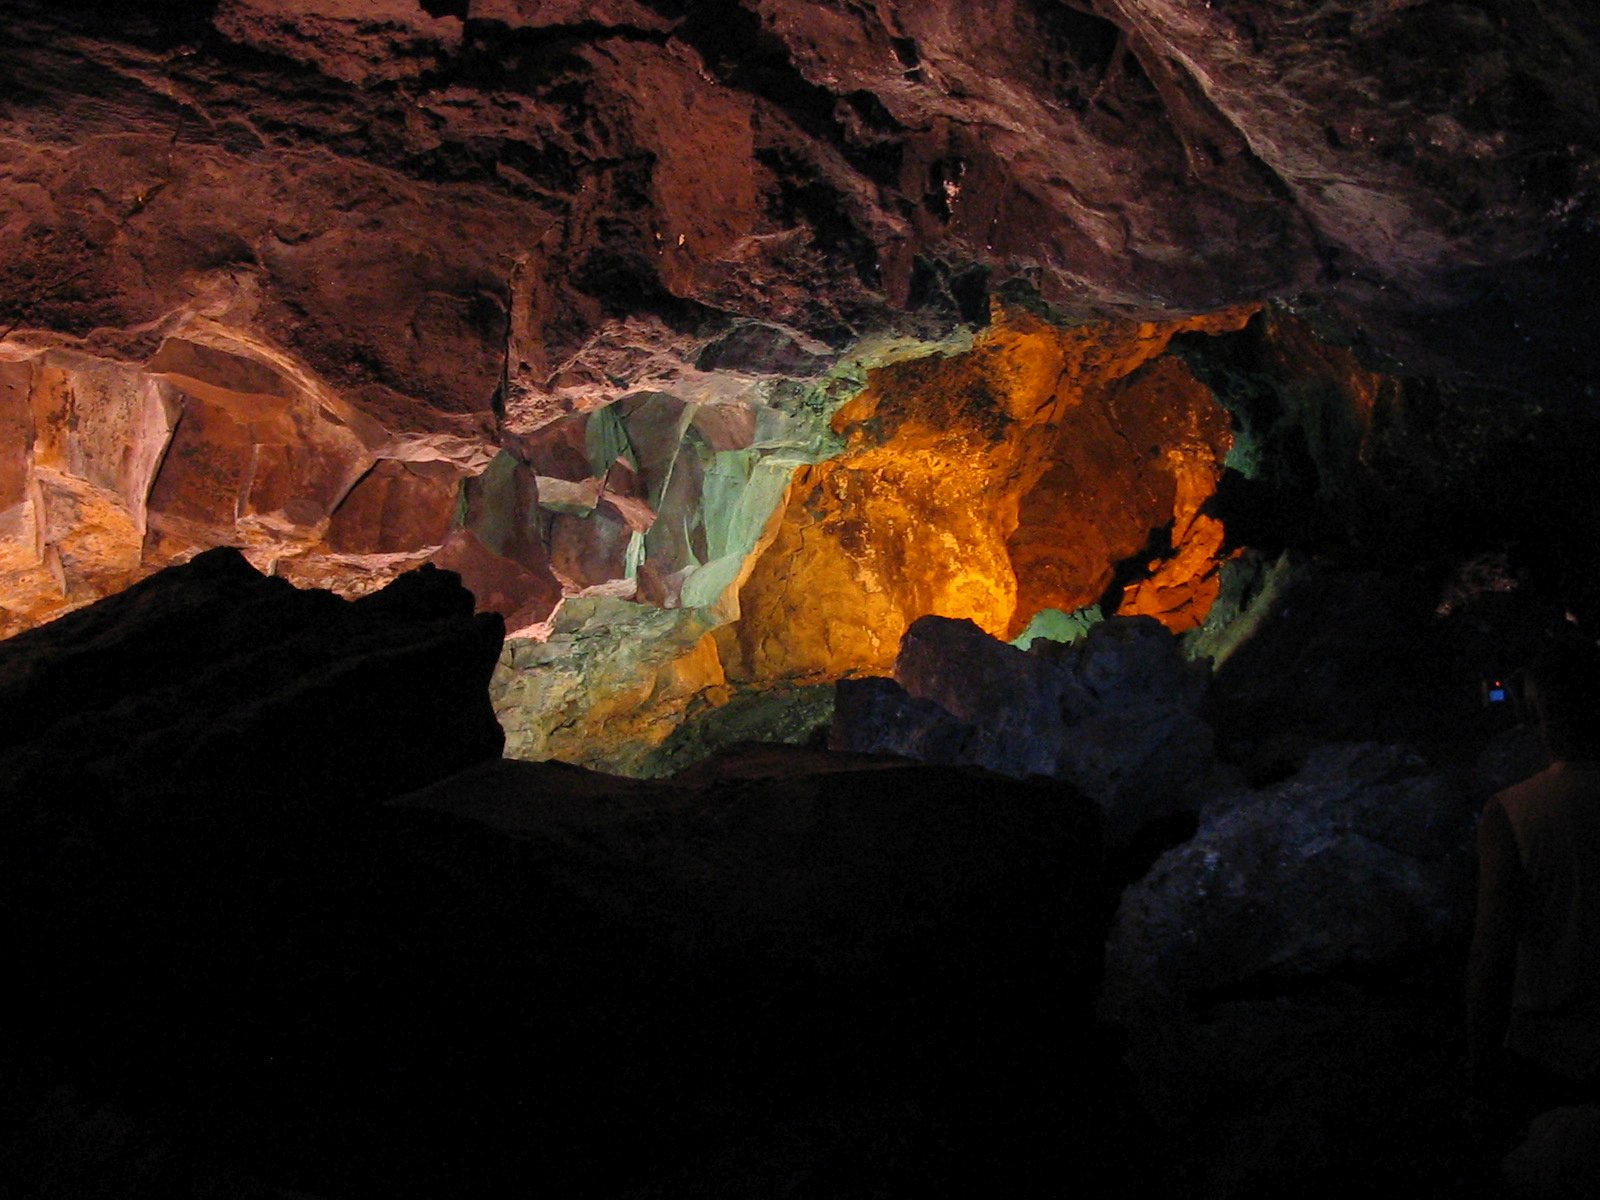 Minerały barwiące zastygłe skały na różne kolory